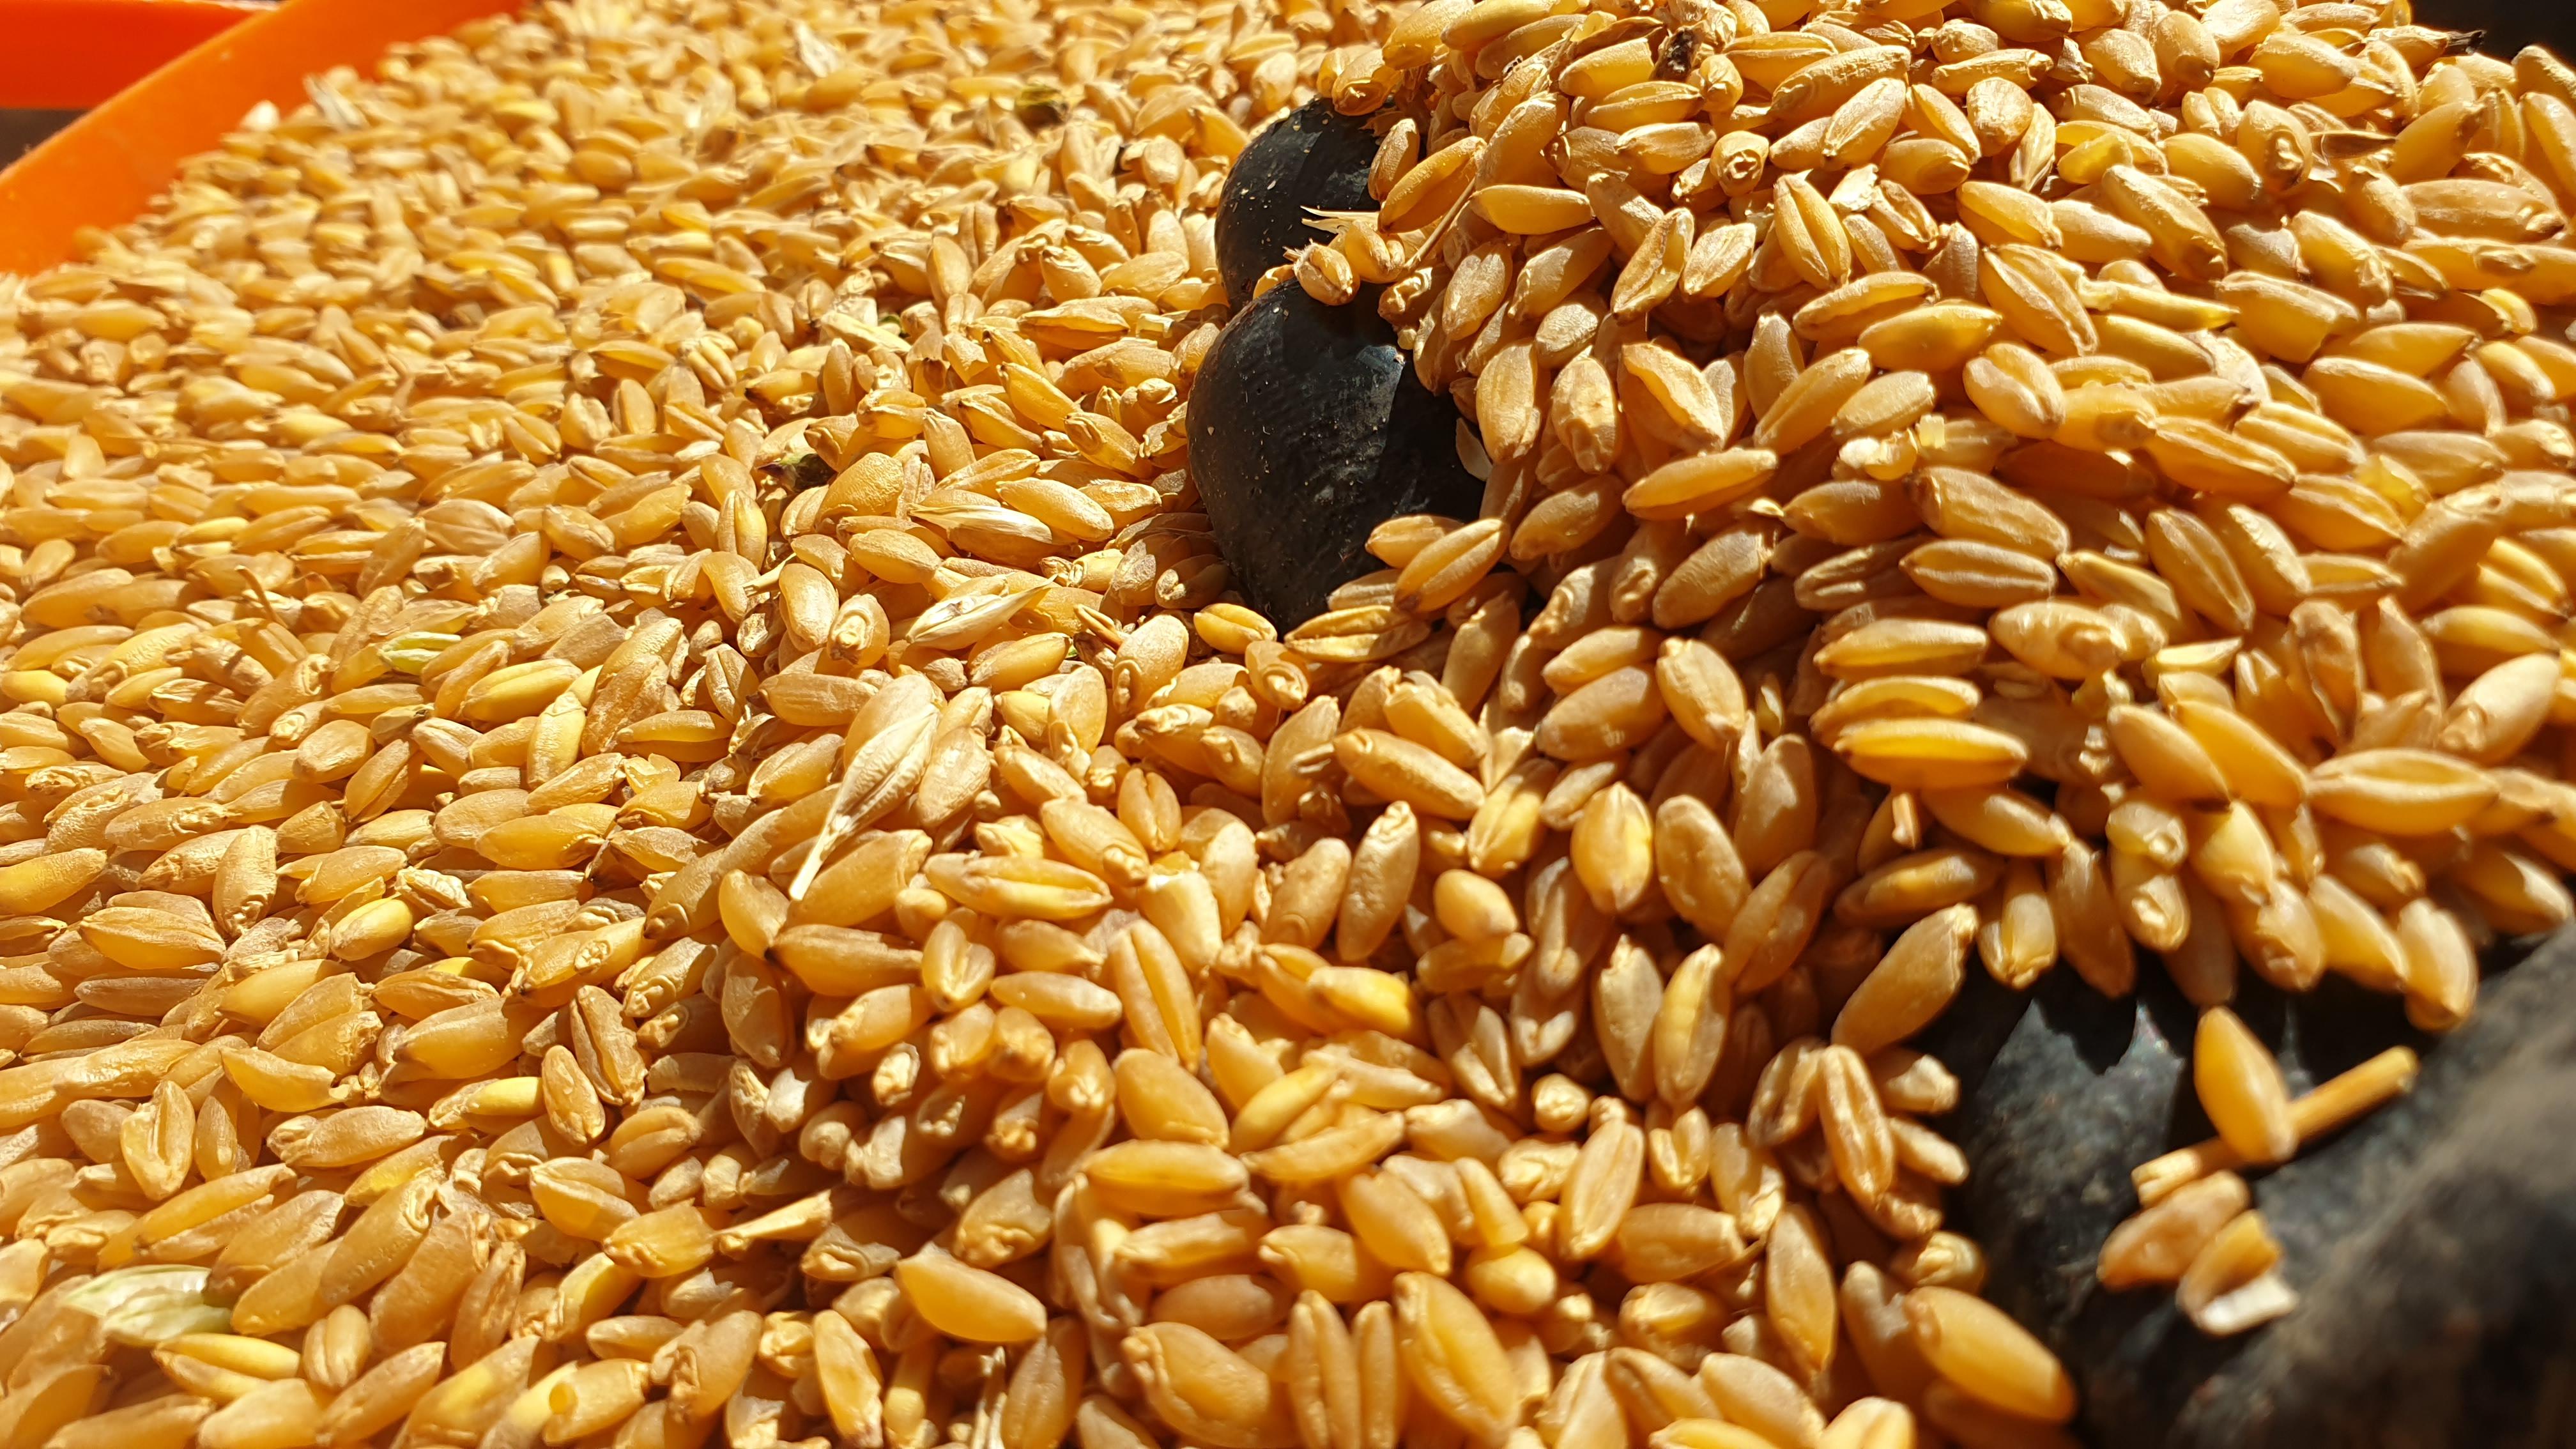 Buğday (Makarnalık) - Mahmut Güngör tarafından verilen satılık kızıltan-91 çeşidi buğday (makarnalık)  ilanını ve diğer satılık buğday (makarnalık) ilanlarını tarimziraat.com adresinde bulabilirsiniz